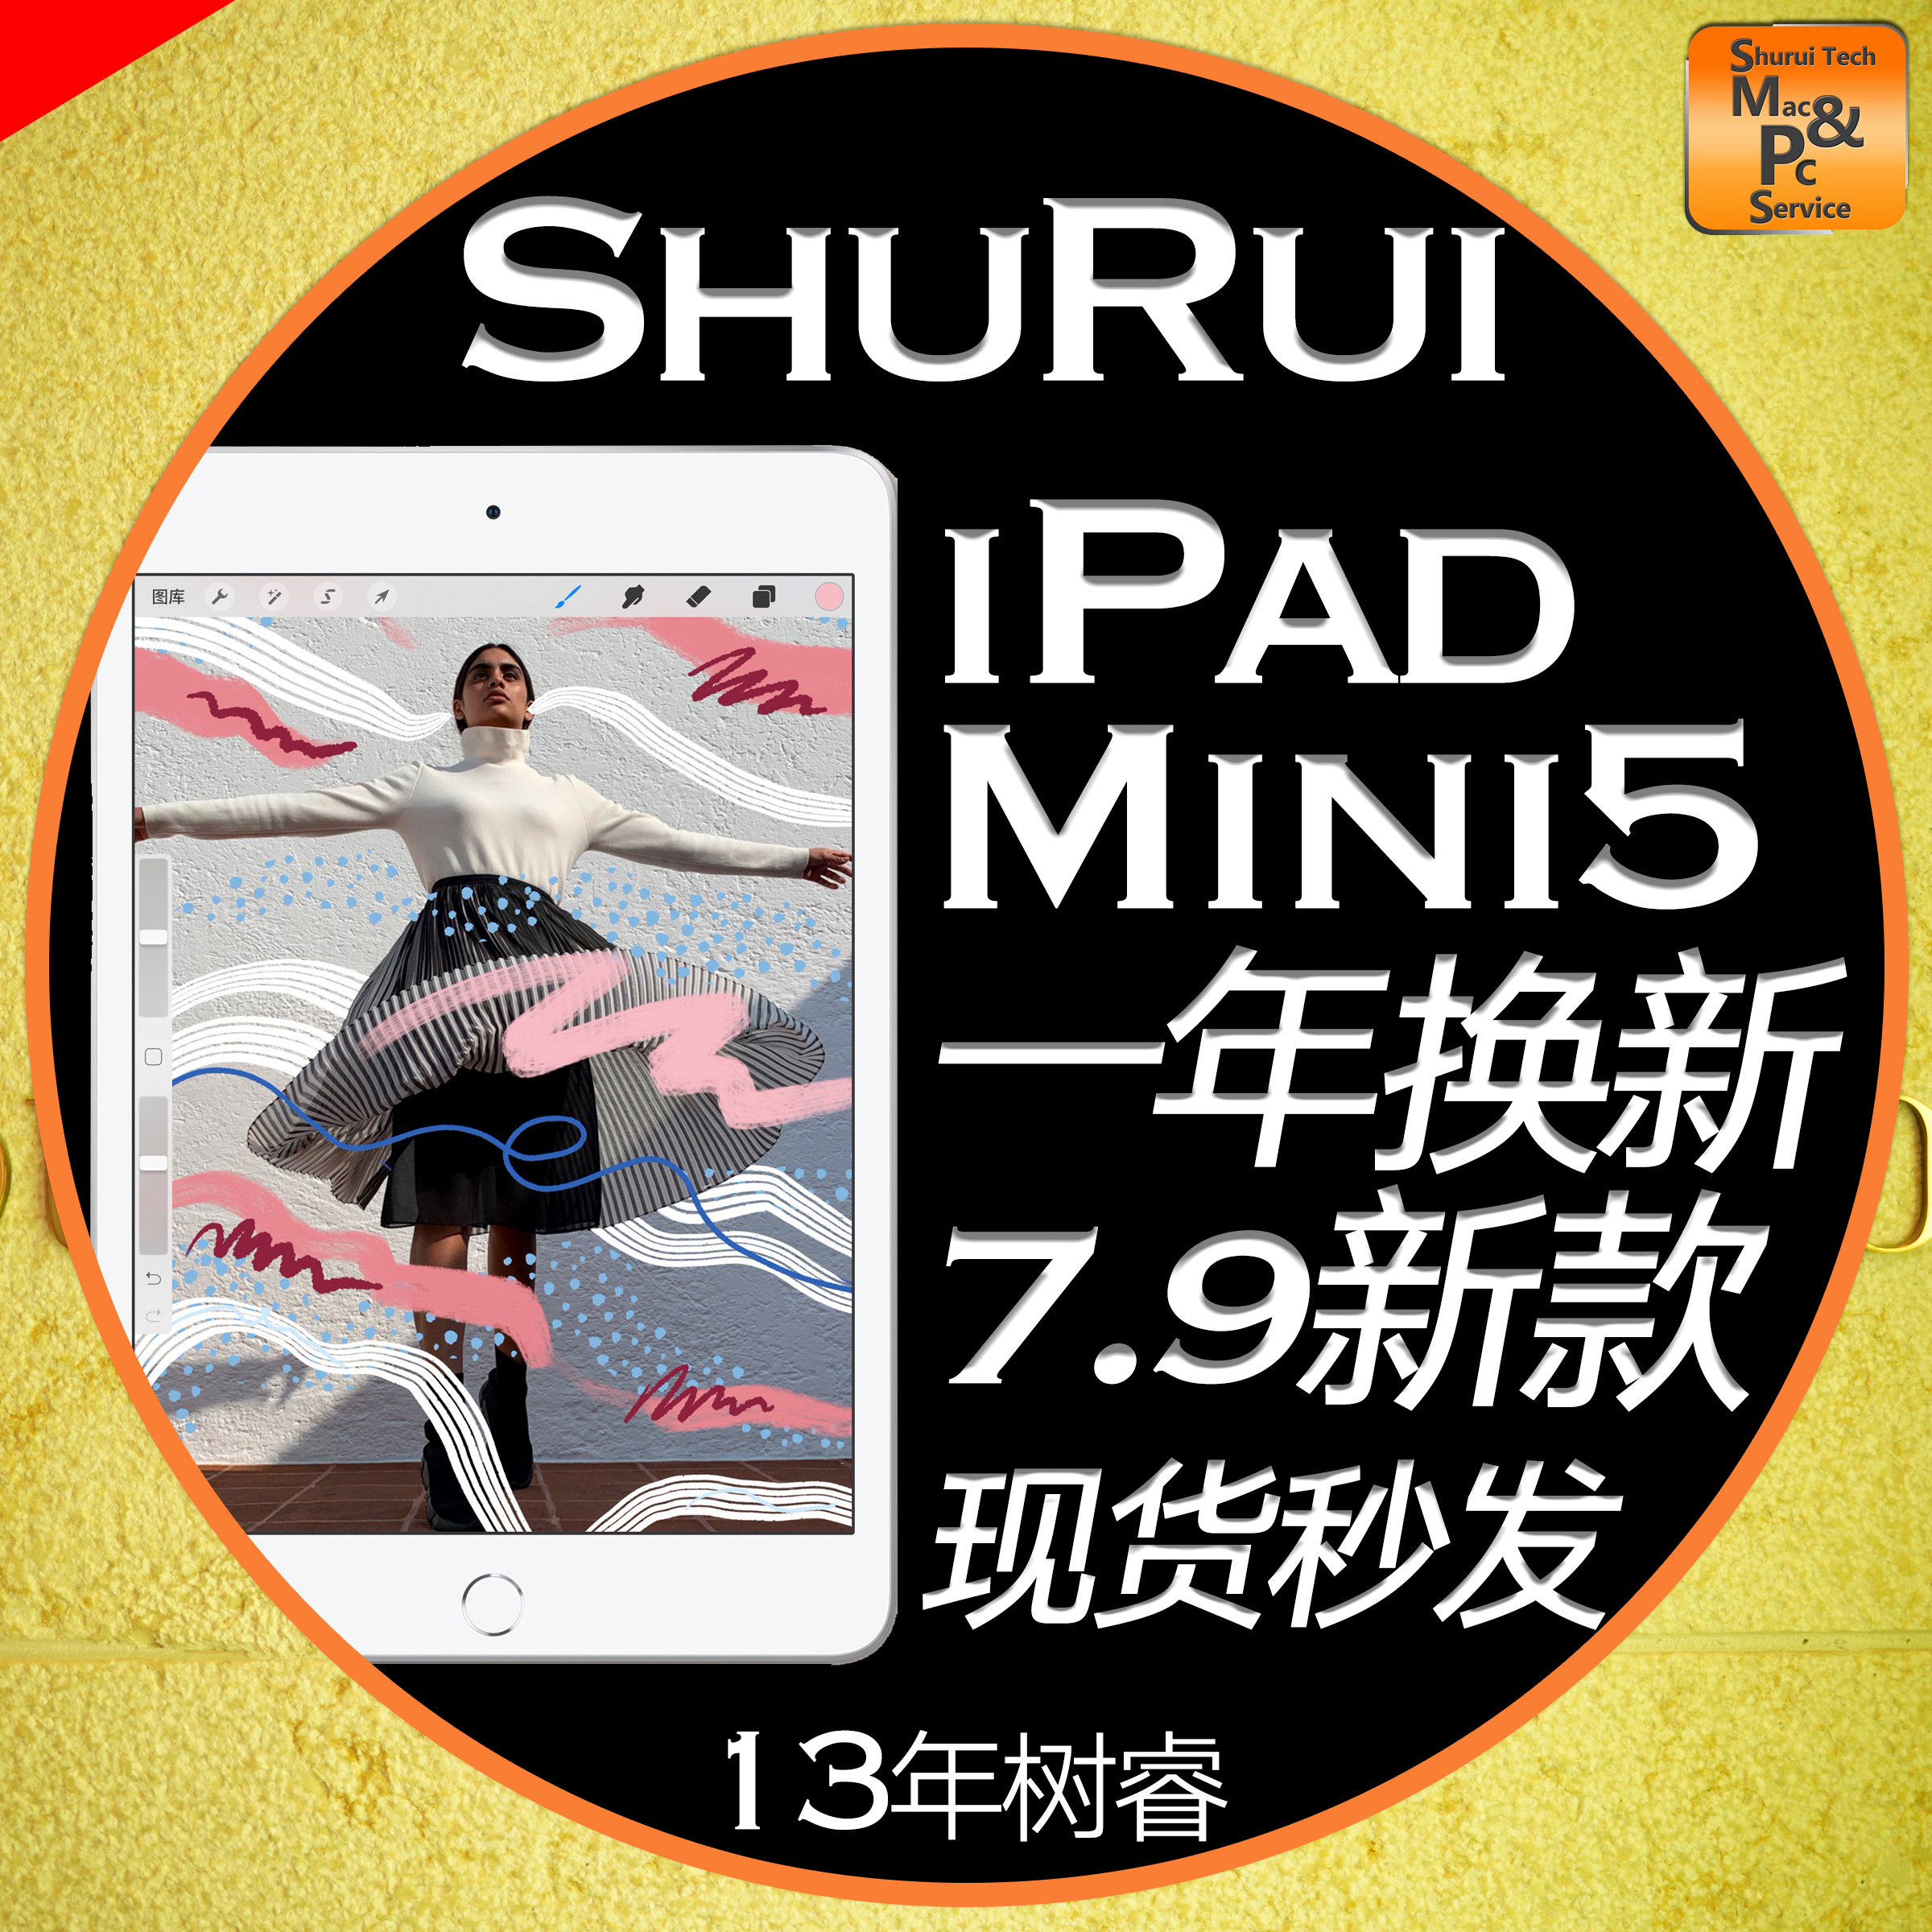 新款Apple/苹果 iPad mini 5 2019款7.9寸迷你平板10.5 iPad Air3